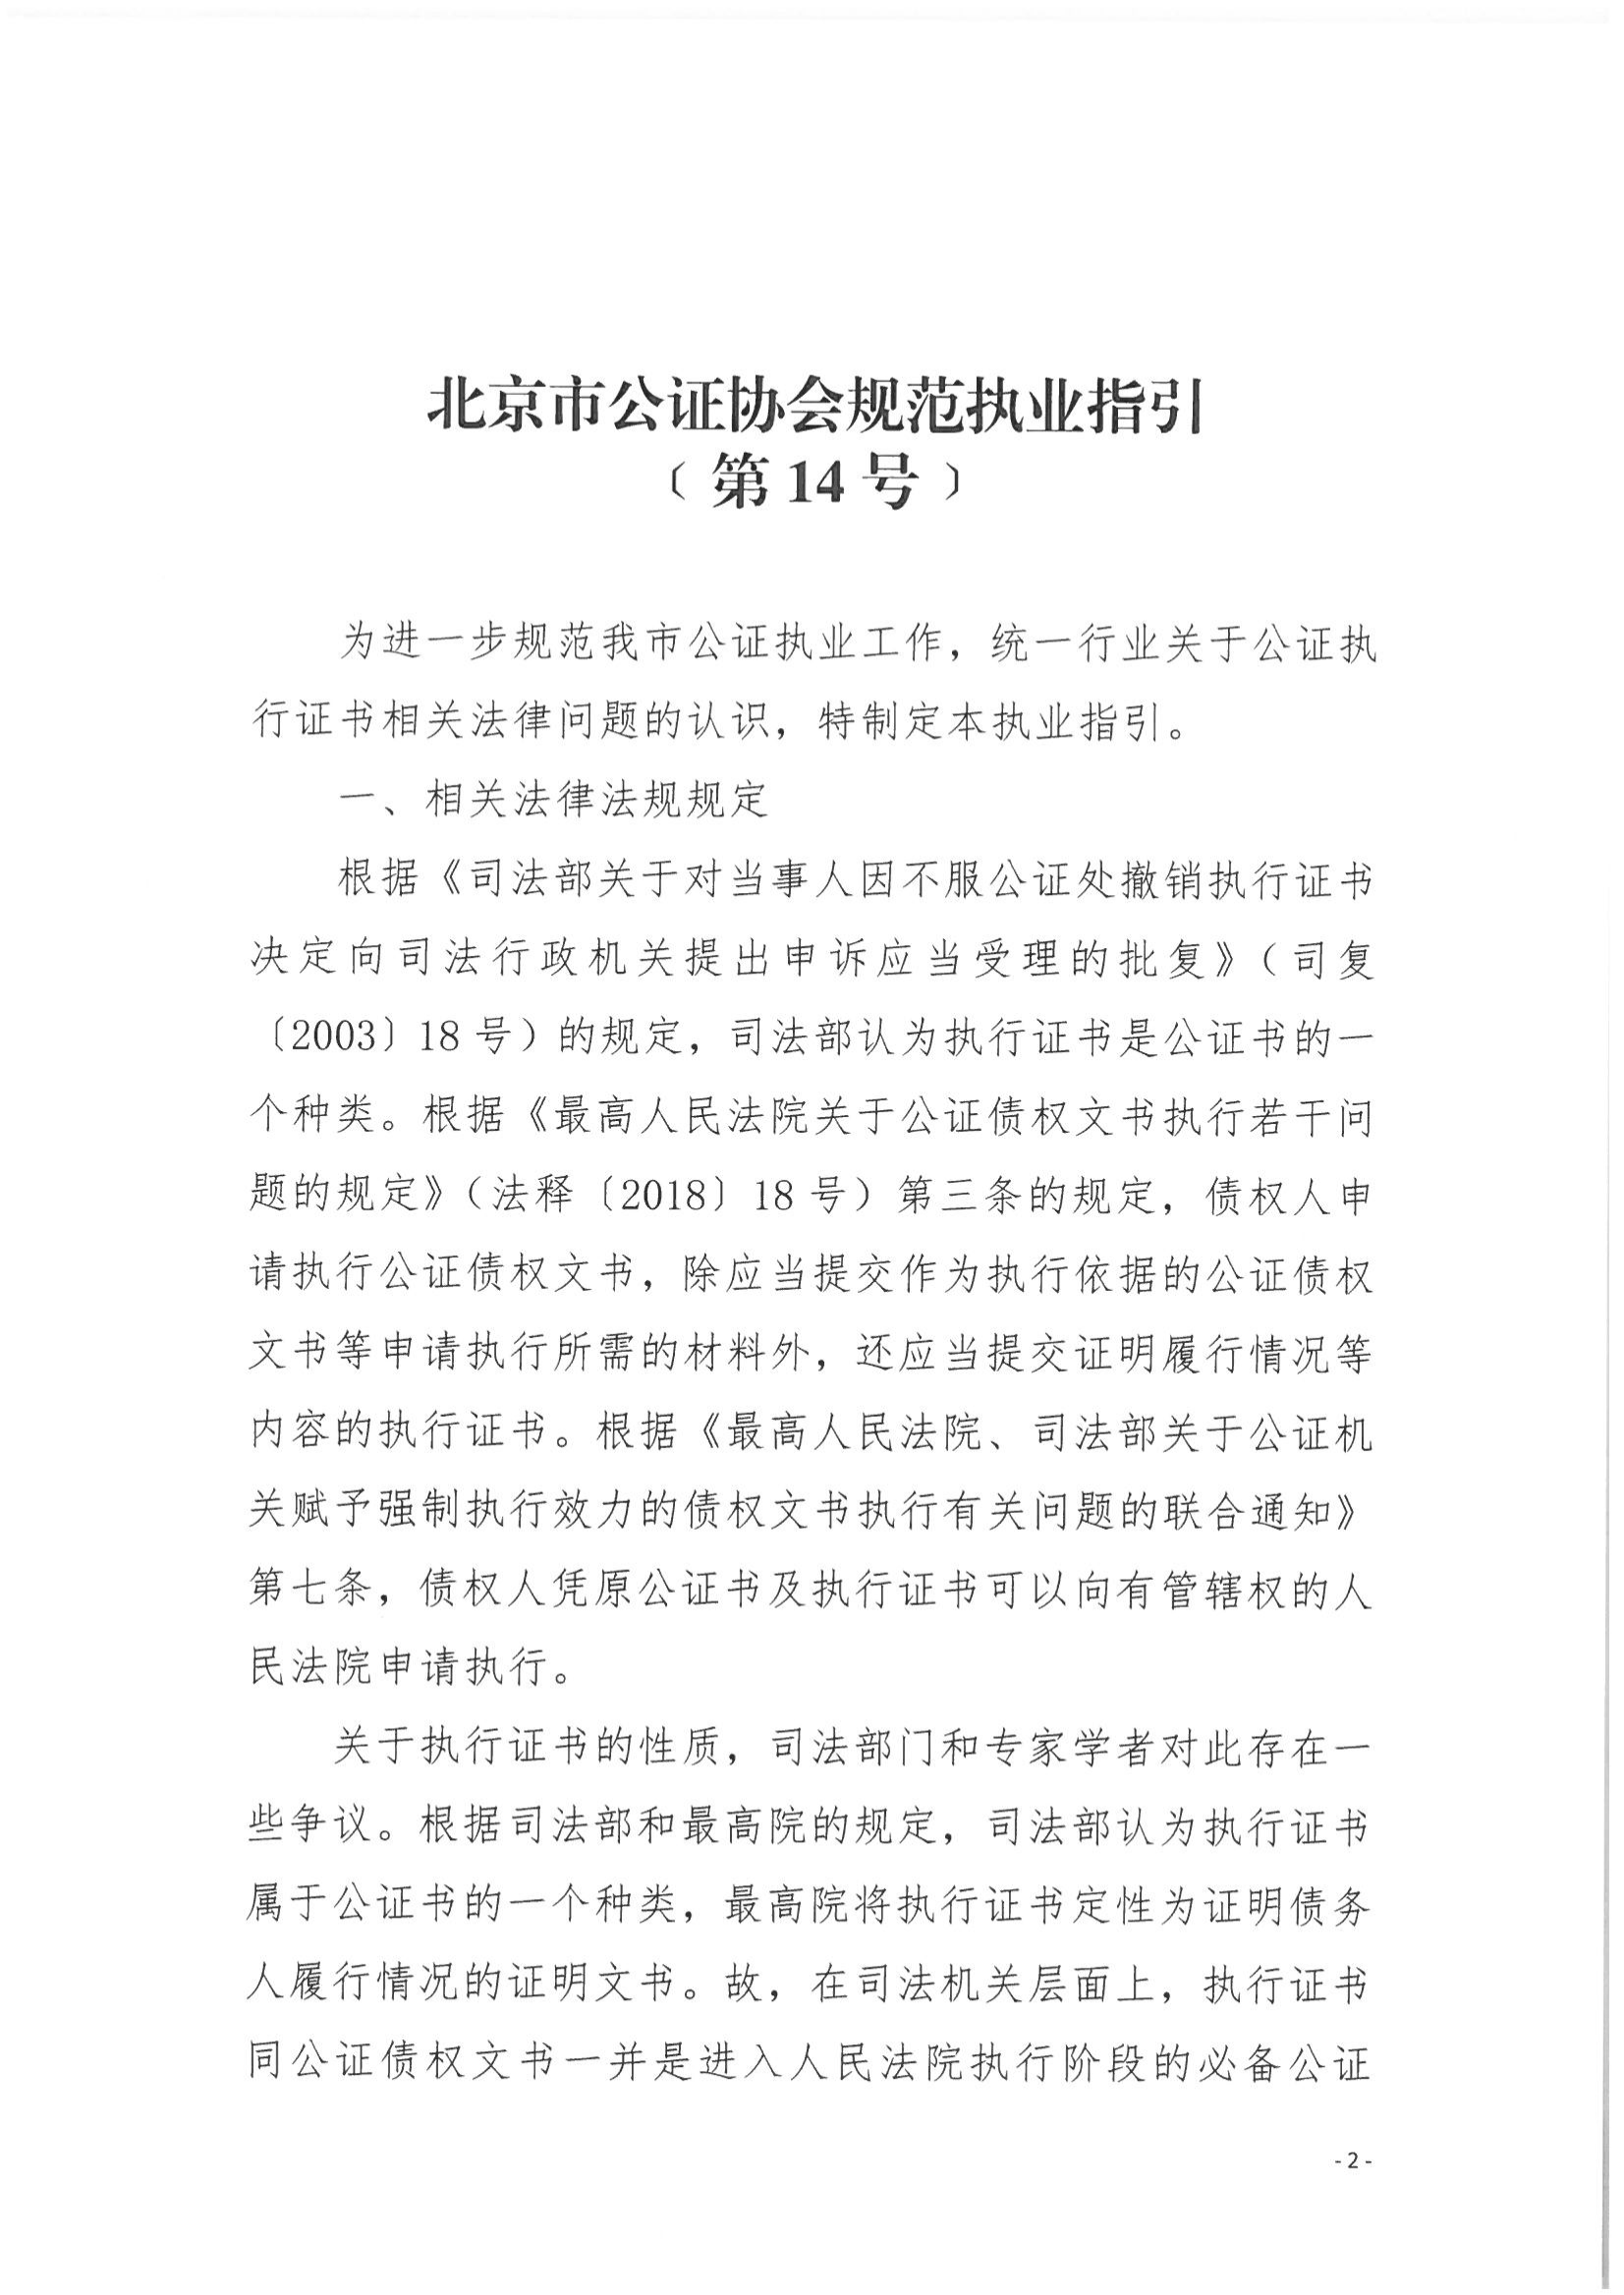 京公协字【2021】25号 北京市公证协会规范执业指引【第14号】_02